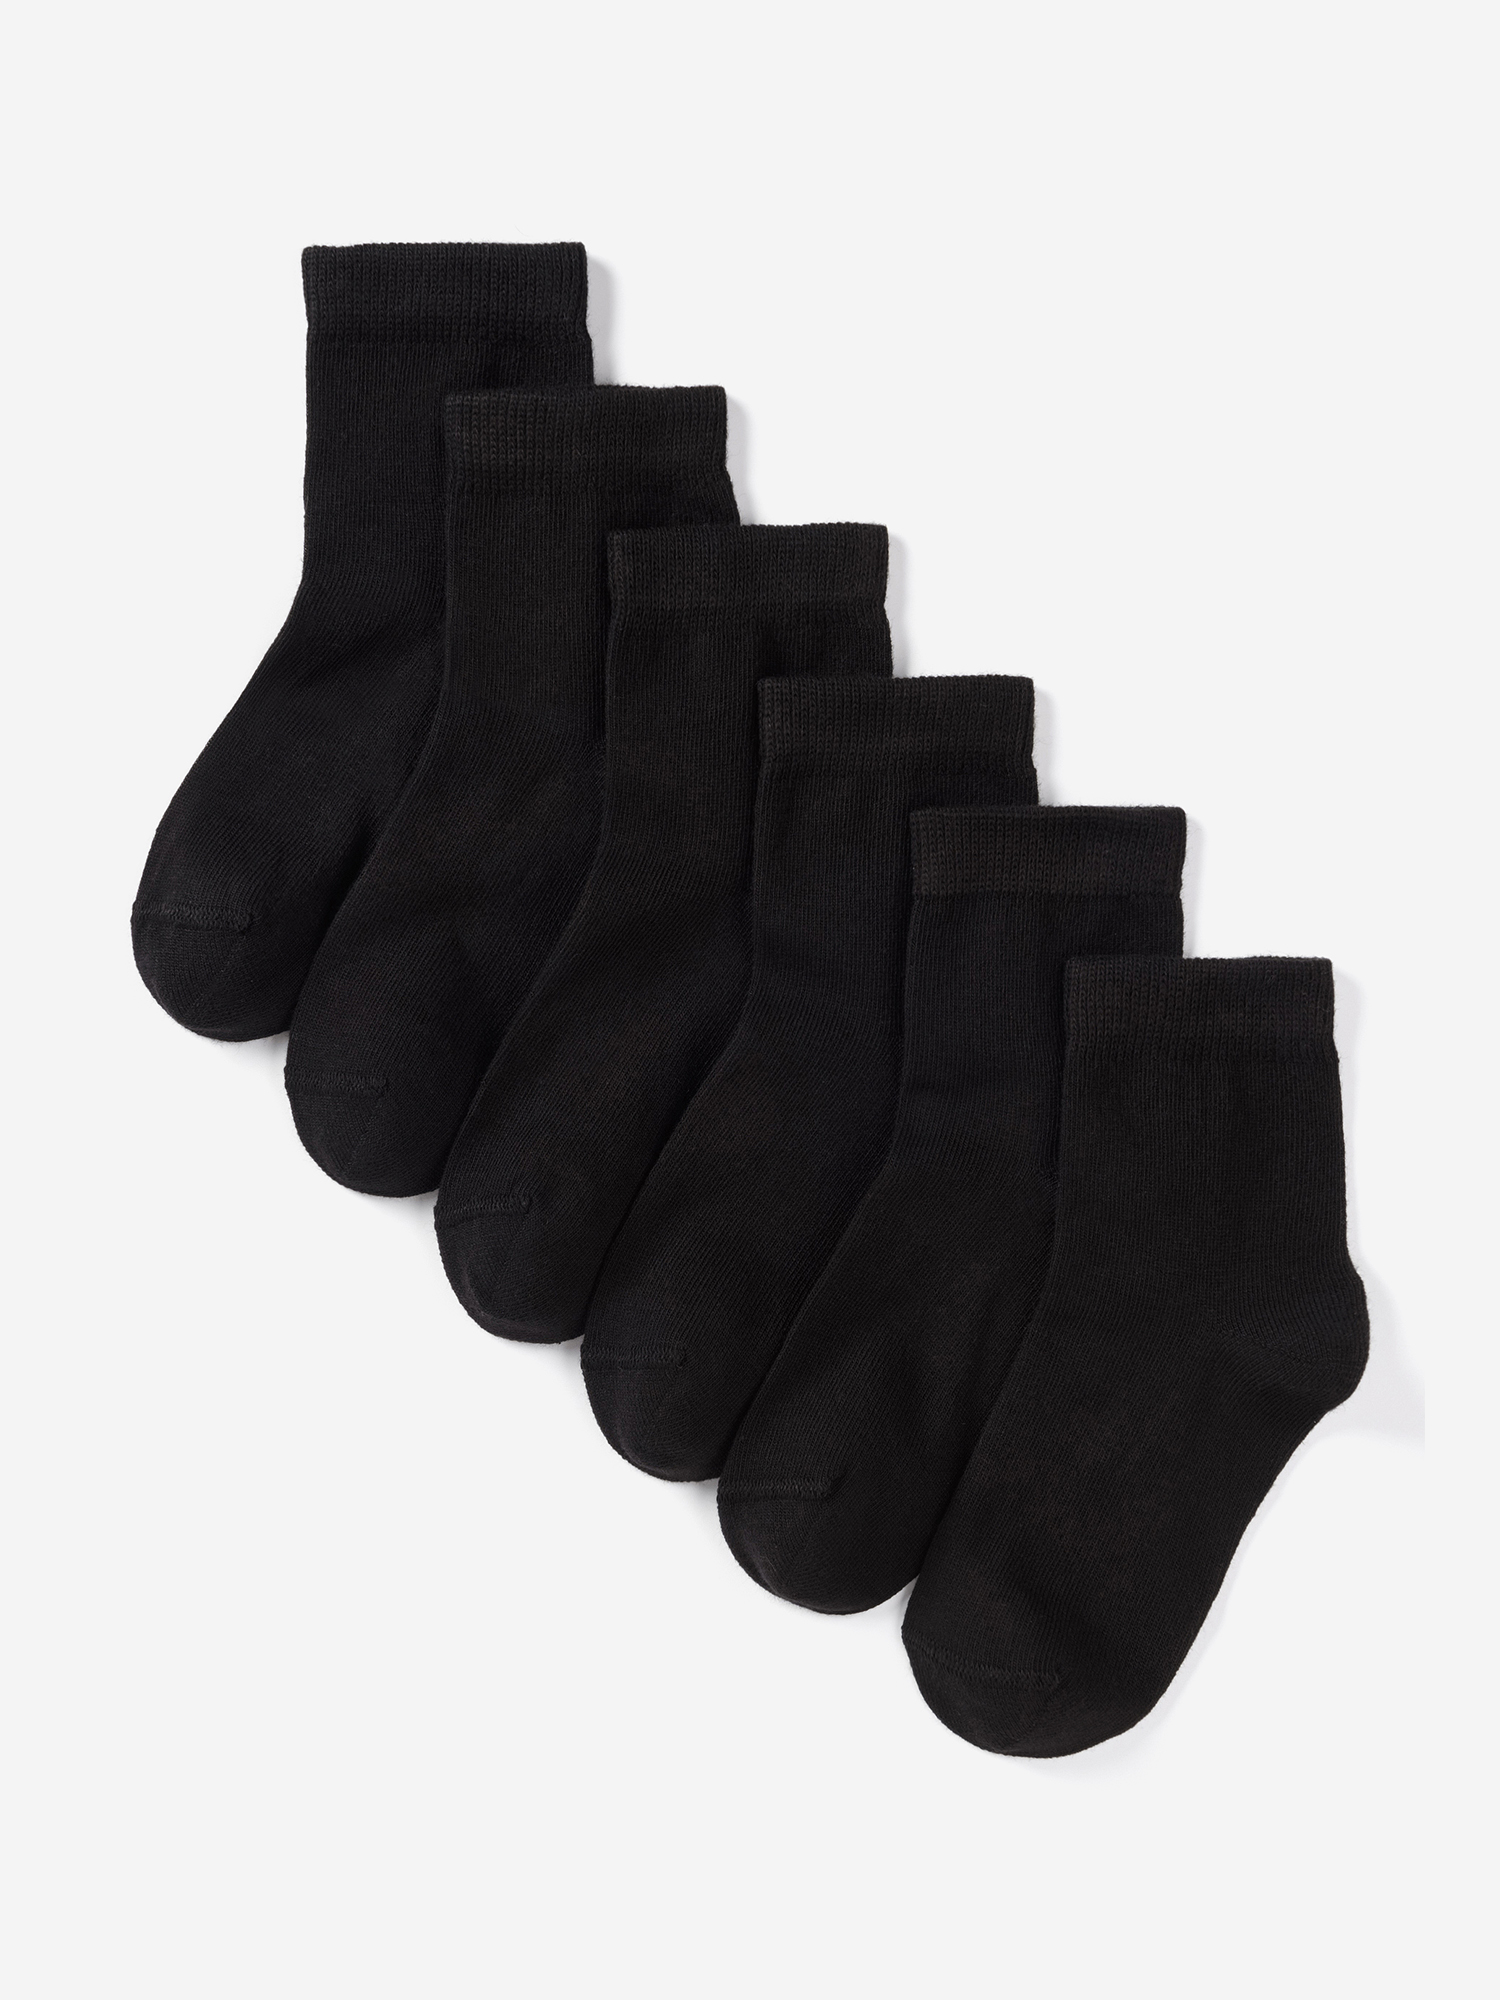 Носки для детей малышей хлопок набор 6 пары Artie, Черный носки для детей малышей хлопок набор 5 пары artie синий